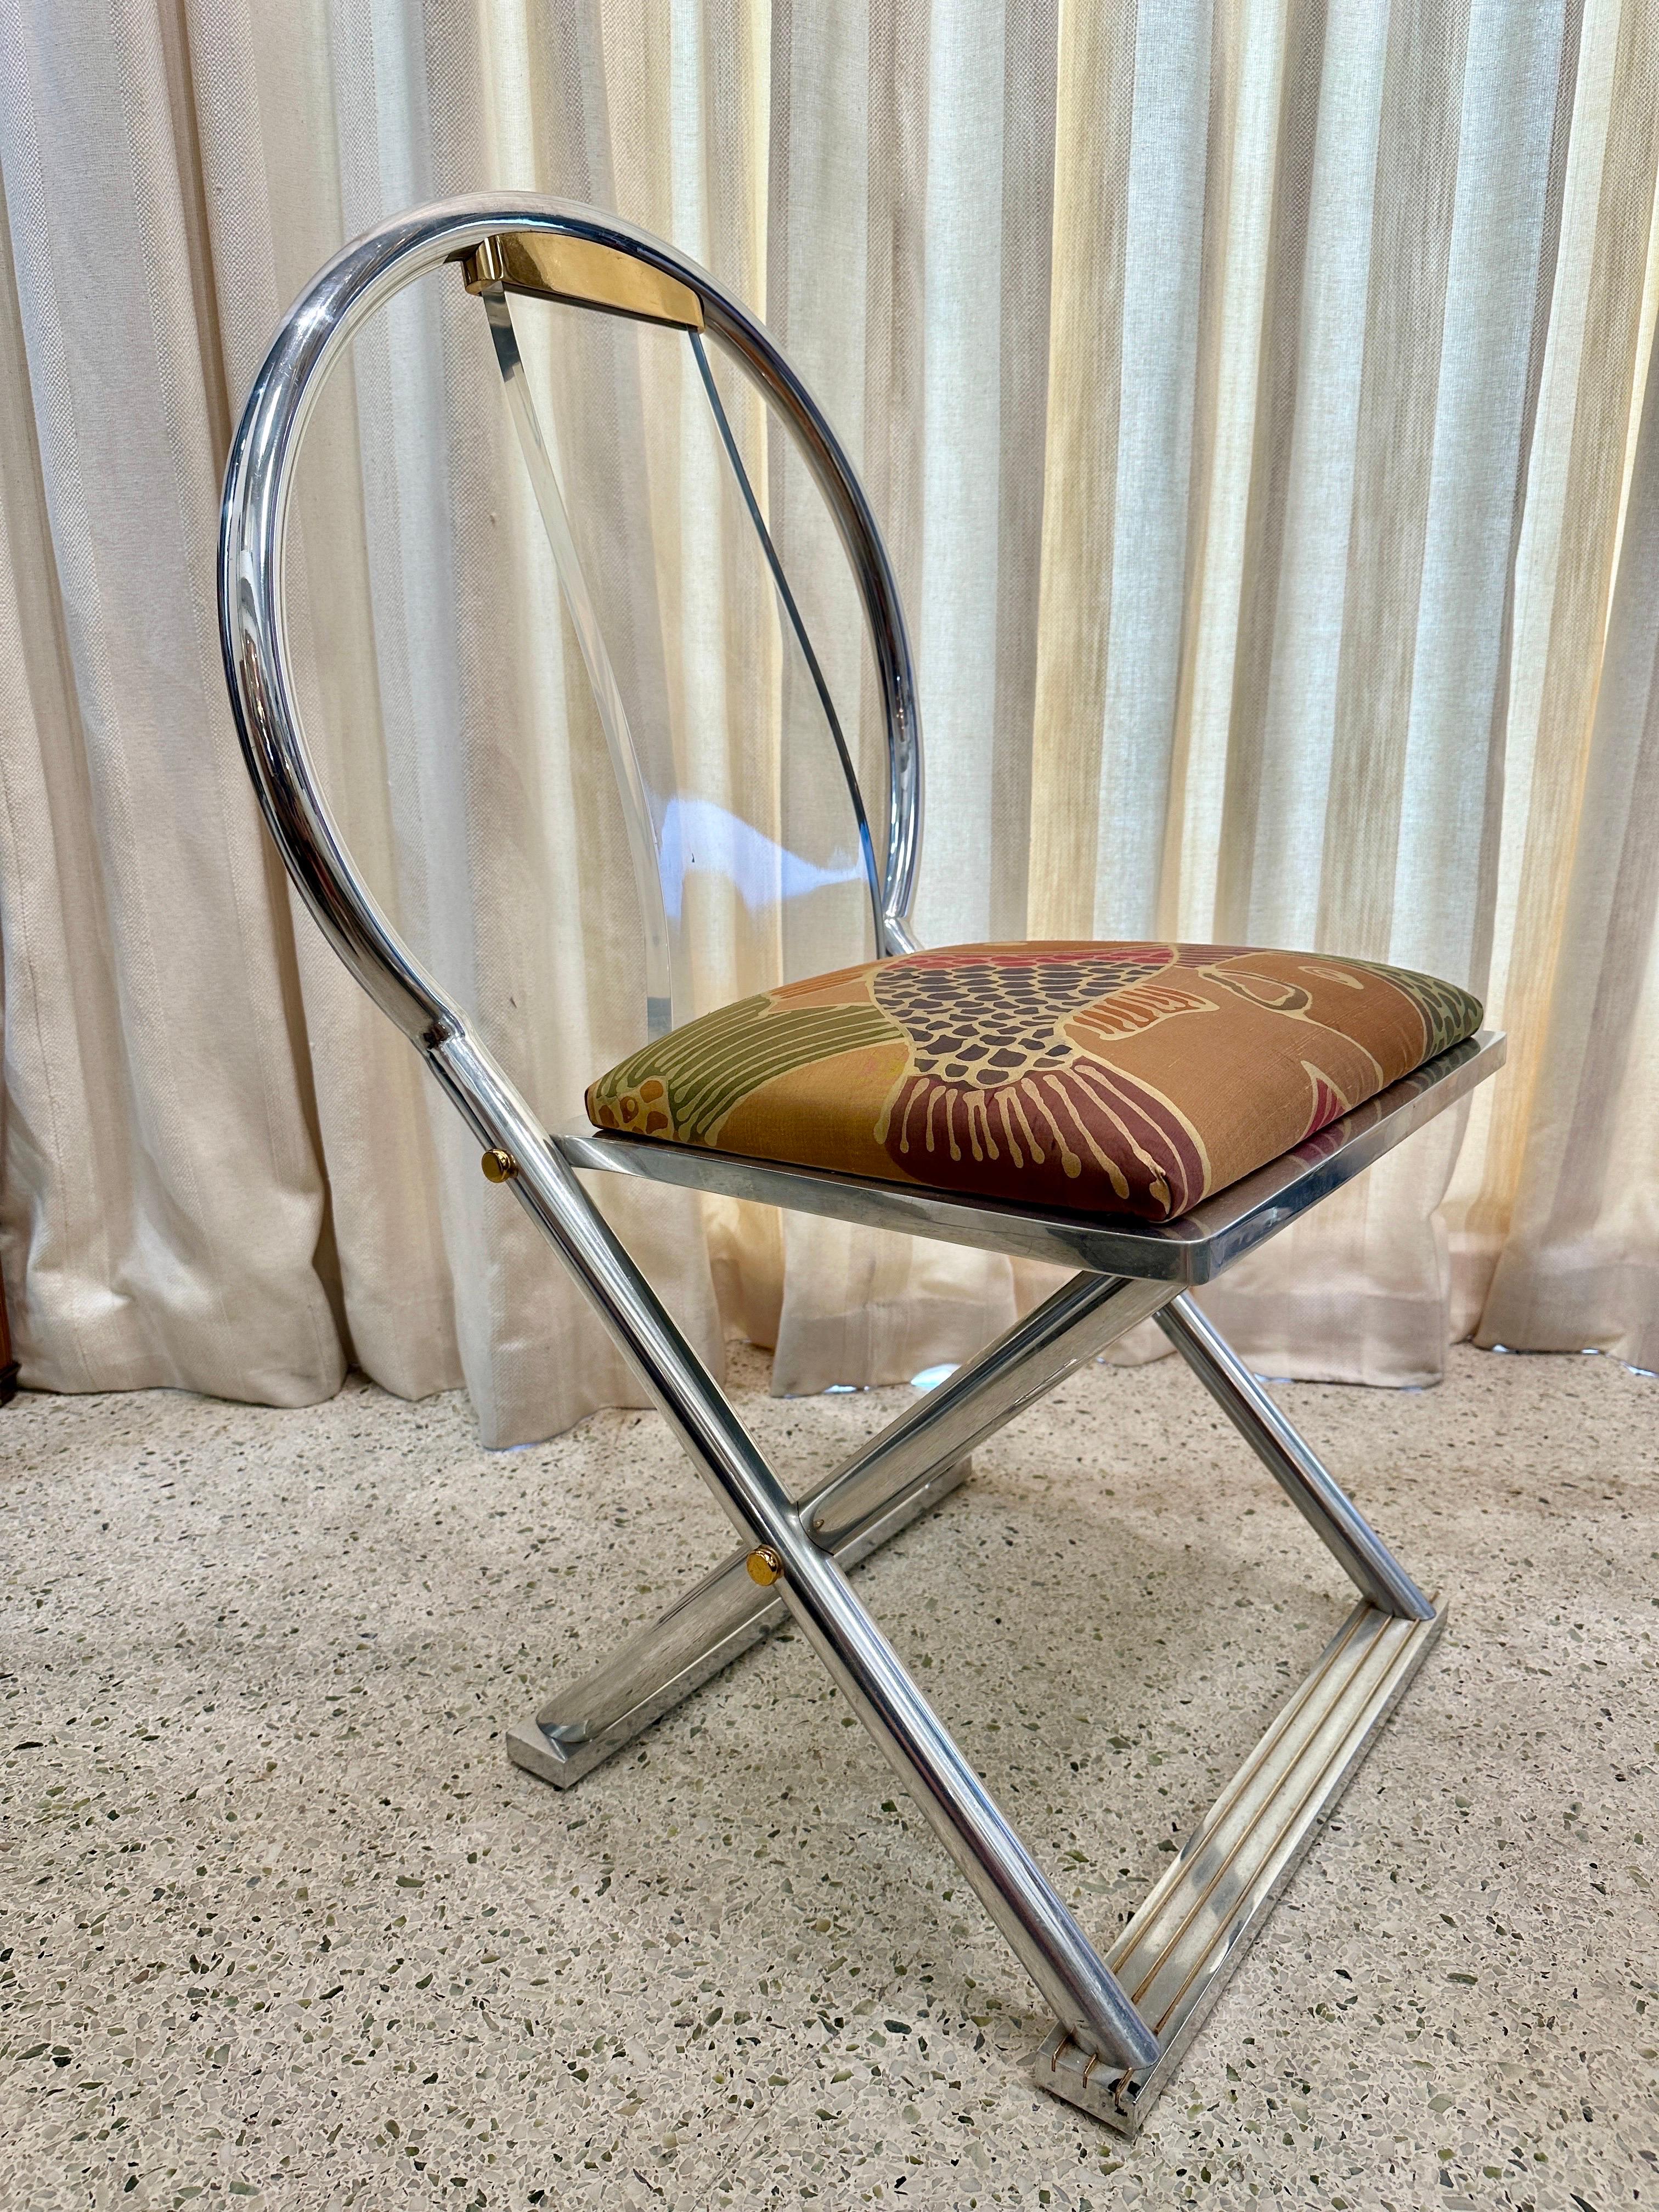 Cette chaise rare documentée de Karl Springer, trouvée dans son catalogue de créations originales, est faite d'acier chromé, de laiton et de lucite. Le coussin d'assise est recouvert d'une fine soie avec une scène de koi vibrante.